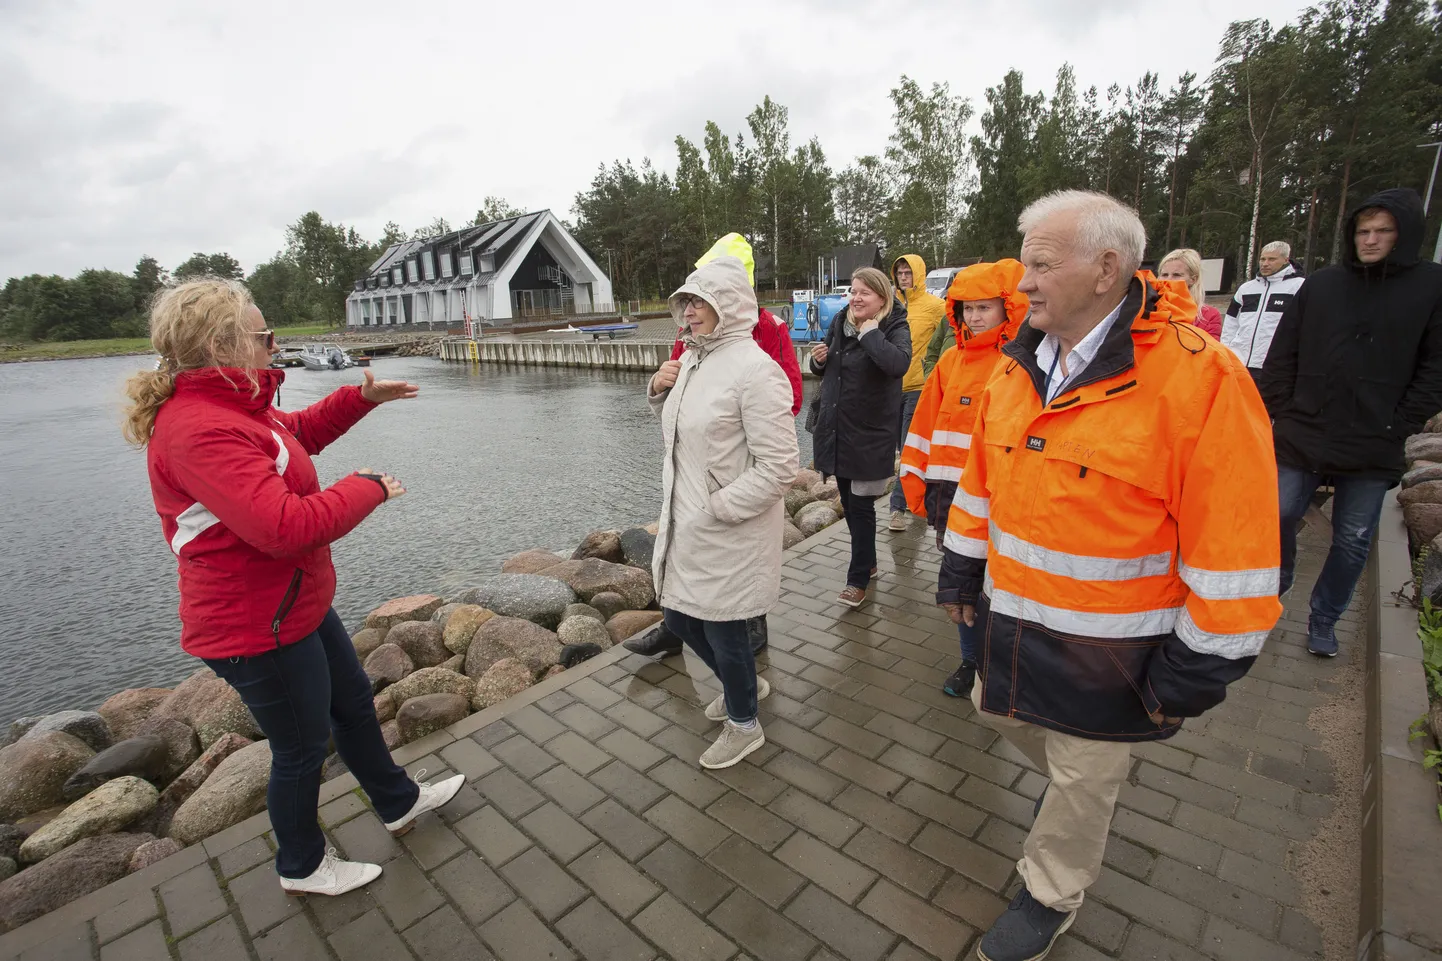 Külalised tundsid tugevast tuulest, vihmast ja kergelt mässavat iseloomu näitavast merest hoolimata ennast Eisma sadama promenaadil turvaliselt.